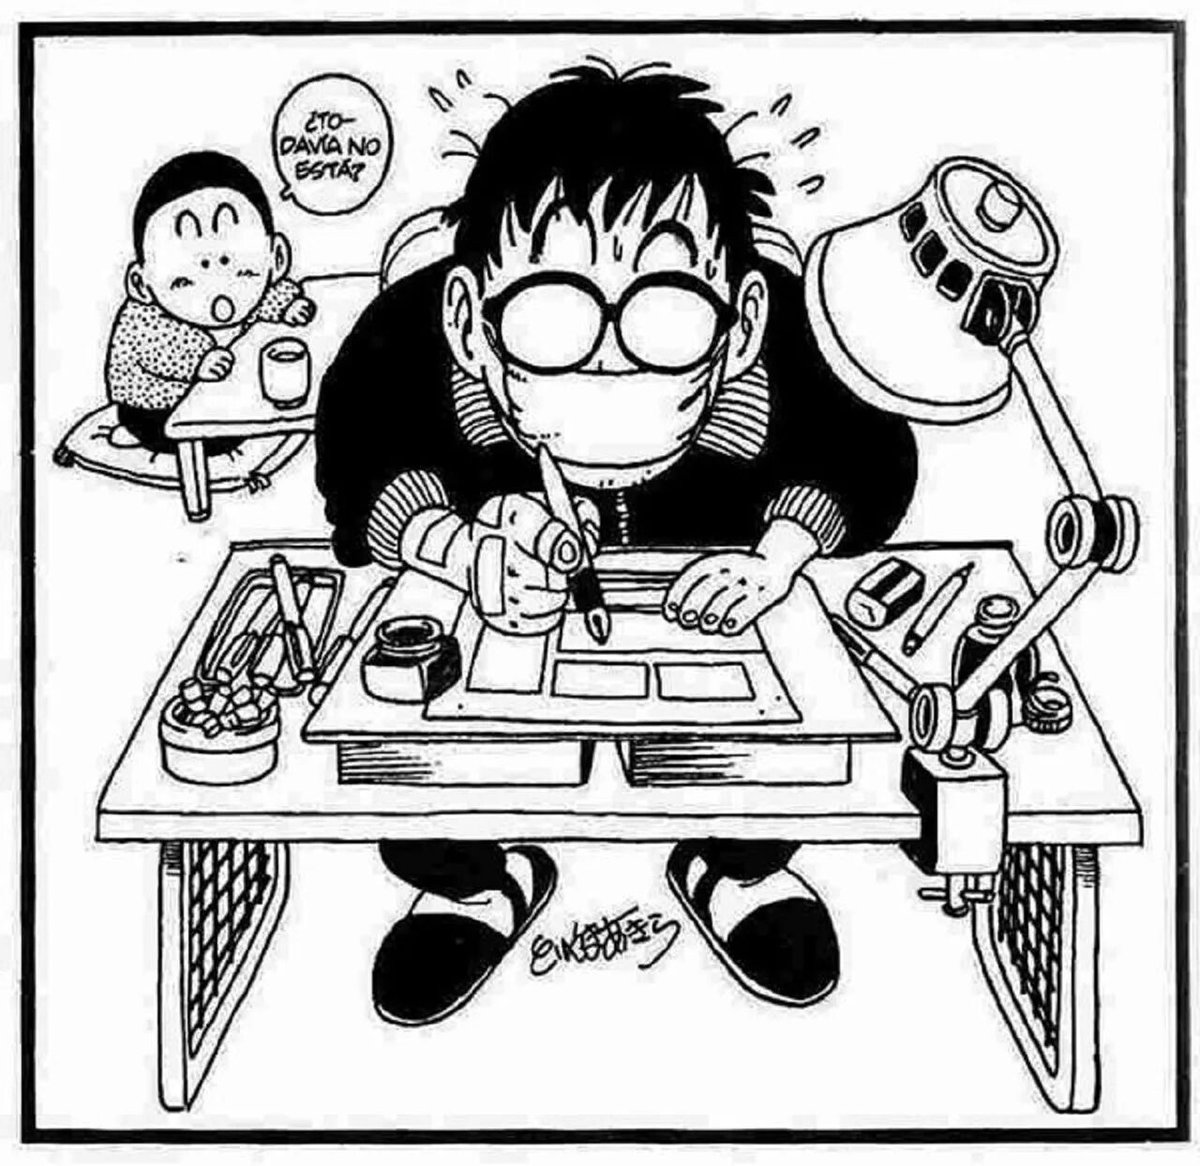 ¡Aprende a dibujar Dragon Ball desde CERO! ✨🐉

¿Te gustaría aprender a dibujar al estilo del gran maestro Akira Toriyama? ¿Quieres comenzar un fanmanga de Dragon Ball pero no sabes por dónde empezar?

Hazte suscriptor en IG  y podrás acceder a todas mis lecciones de dibujo.